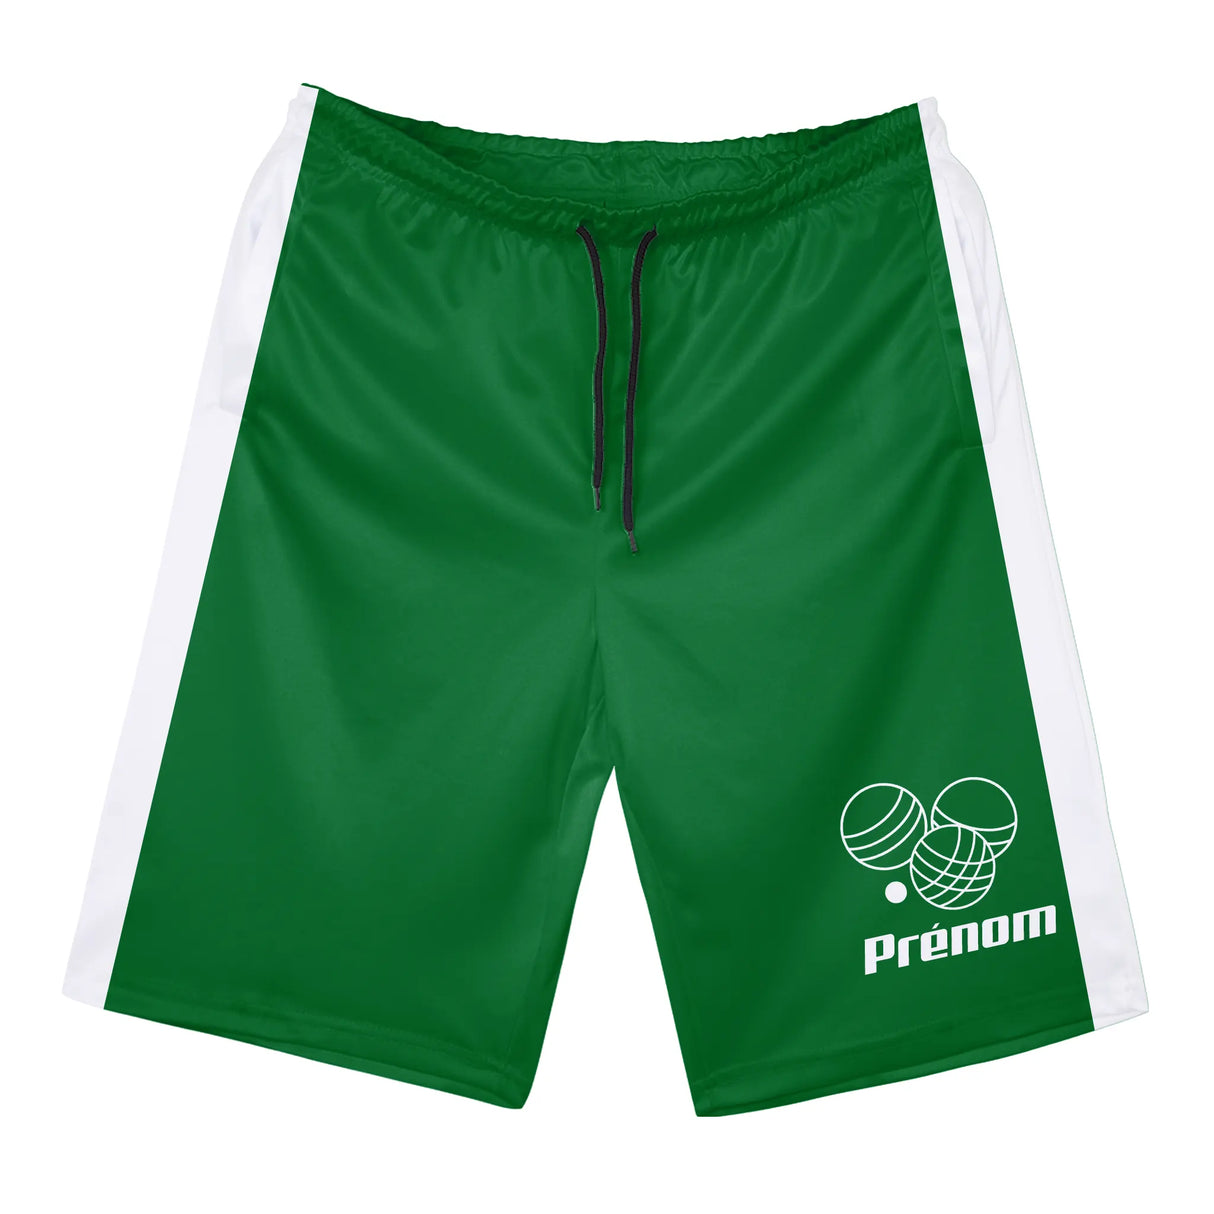 Shorts de Sport Prénom – Confort et Style pour Chaque Match - A010724N36 - Vert